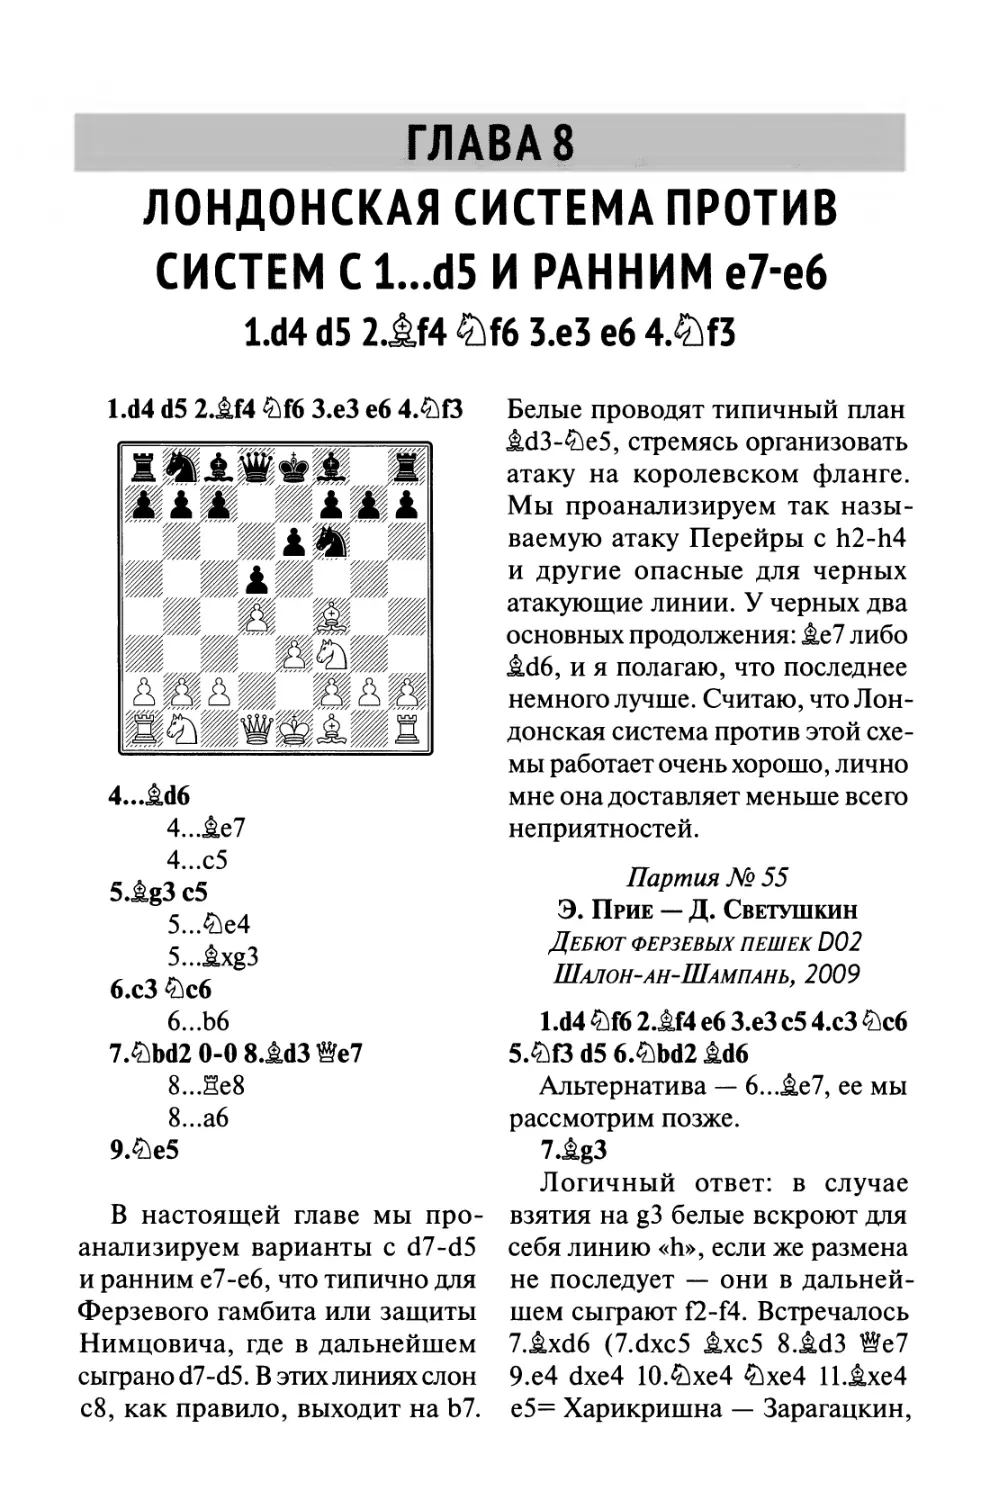 8.Лондонская система против 1...d5 с ранним e7-e6